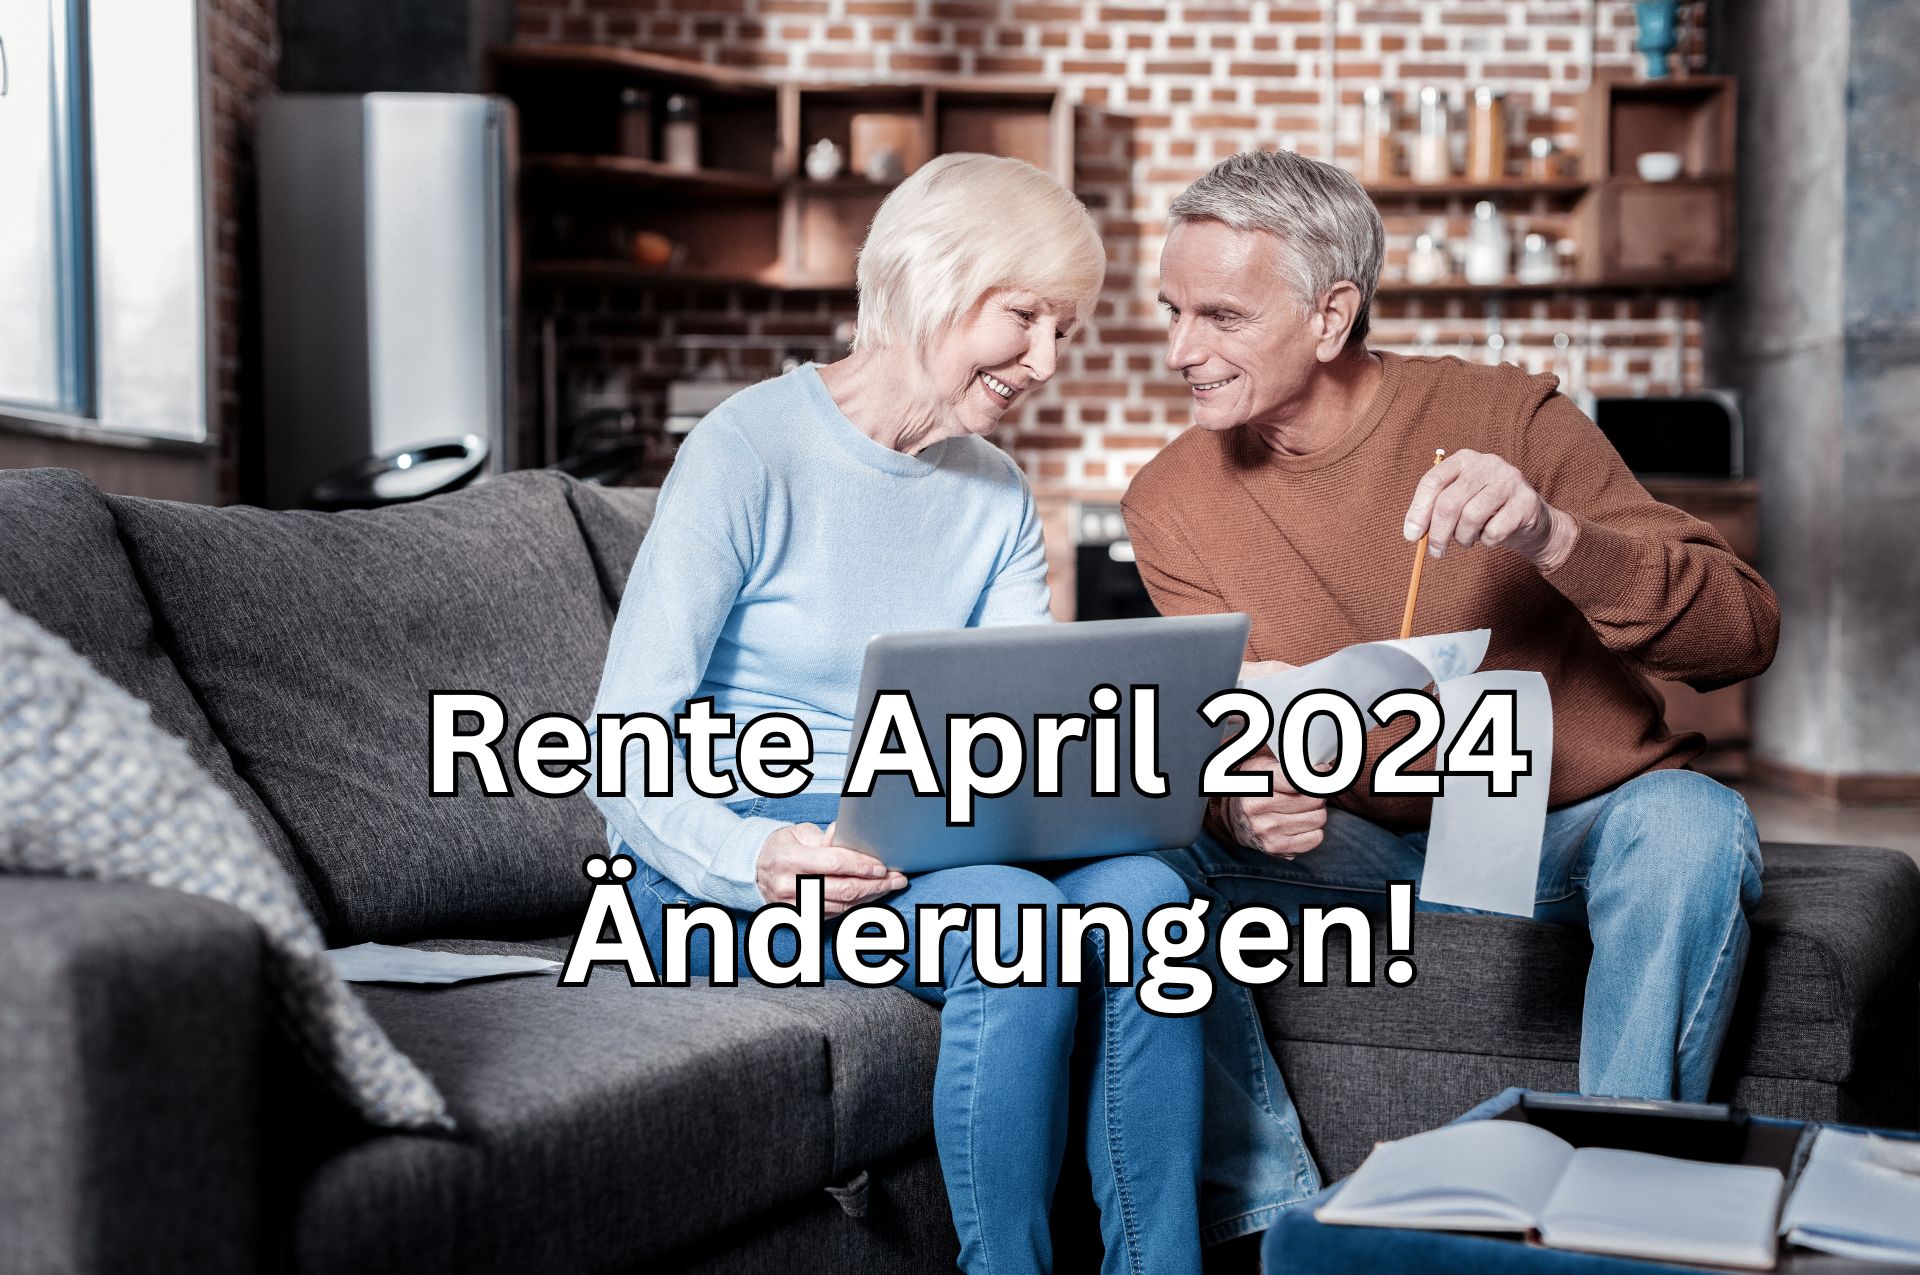 Rente: Änderungen und Neuerungen für Rentner im April 2024